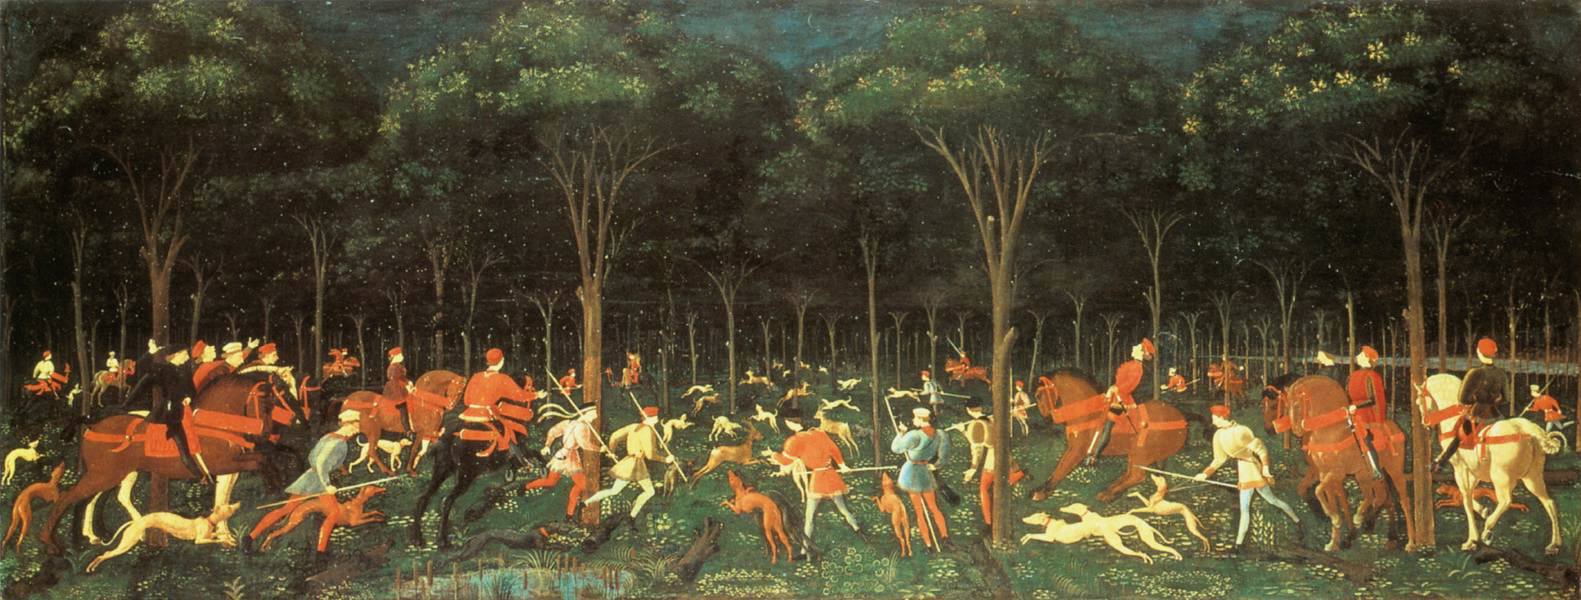 Ormandaki Av by Paolo Uccello - Yaklaşık 1470 - 65 cm × 165 cm 